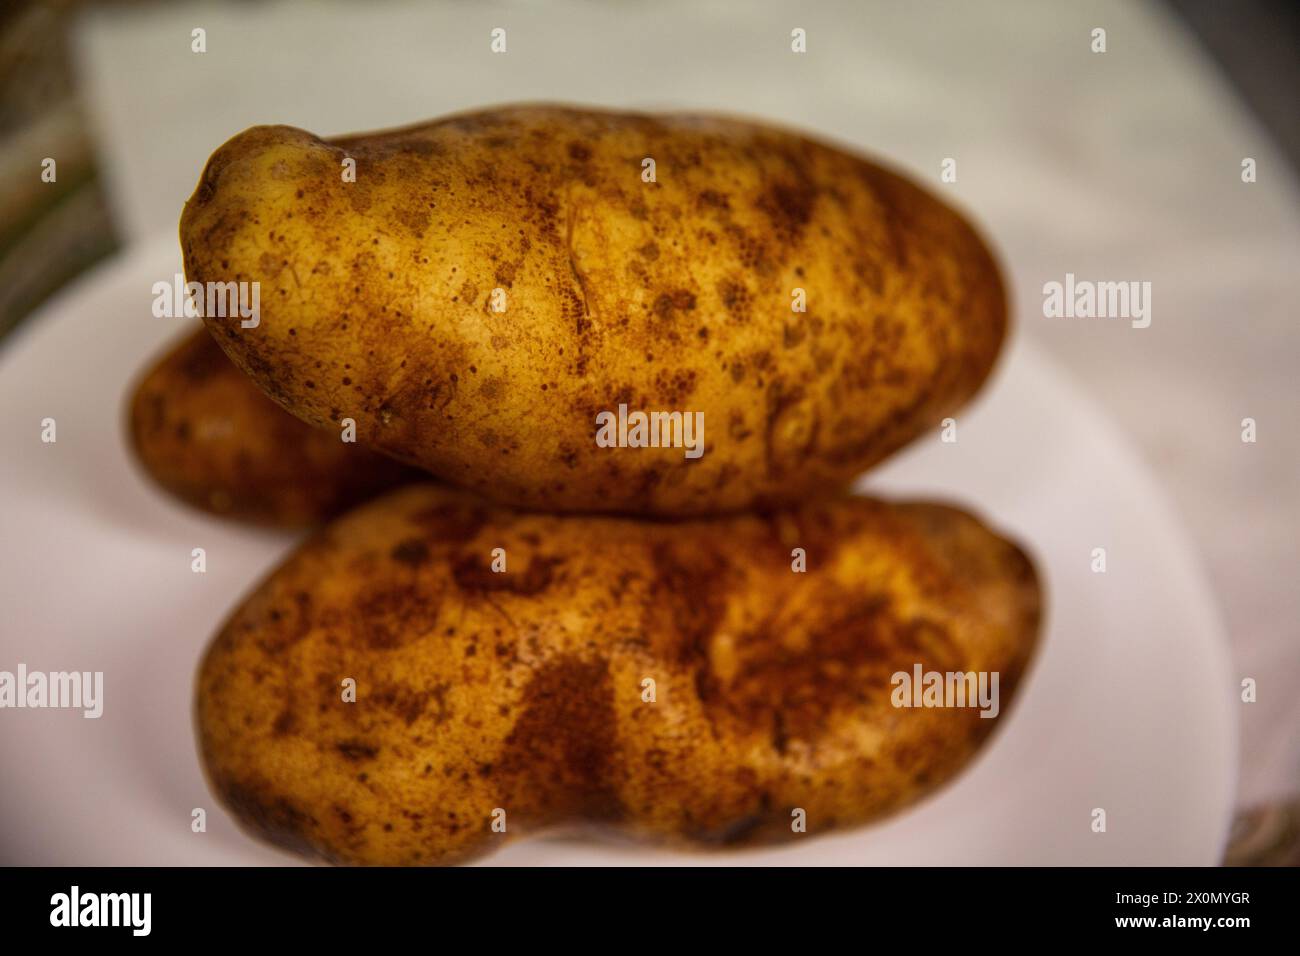 Trois pommes de terre Russet prêtes à être cuites Banque D'Images